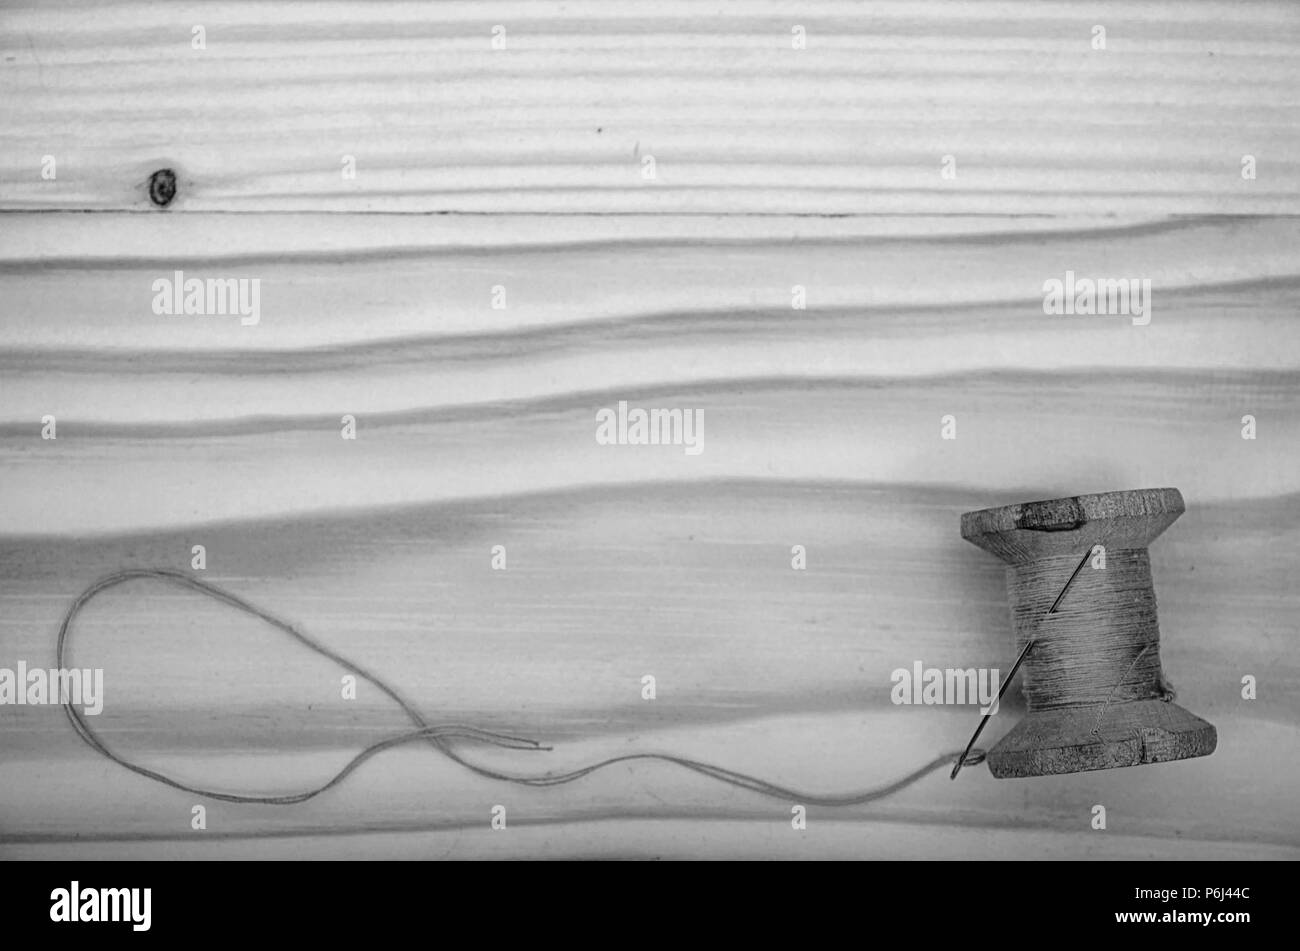 Die alte Haspel der Gewinde- und eine Nadel auf einen hölzernen Tisch in Schwarz und Weiß. Stockfoto